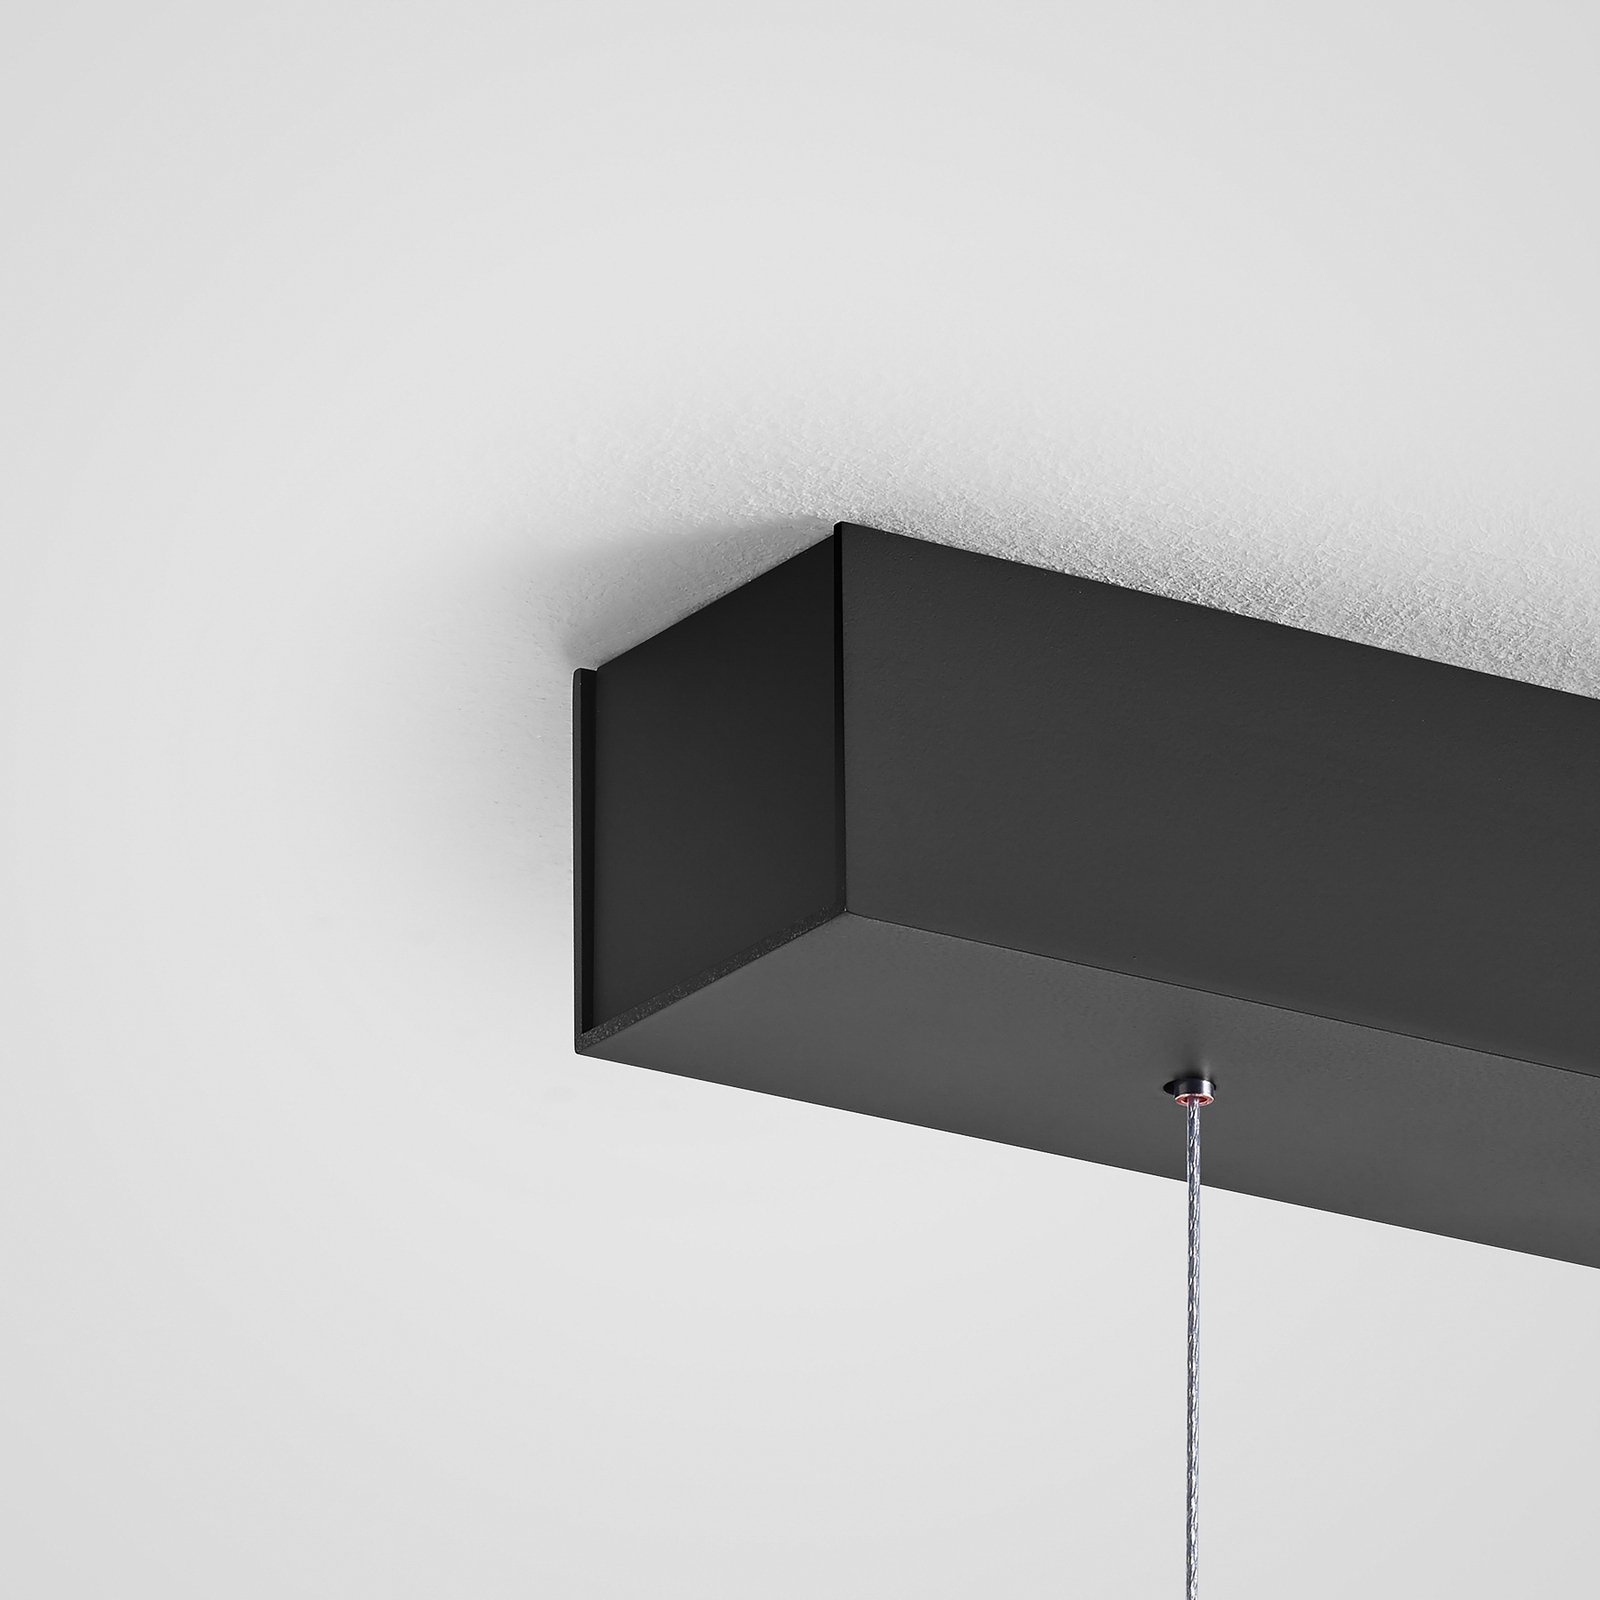 Quitani LED hanging light Keijo, black/nut, 123 cm